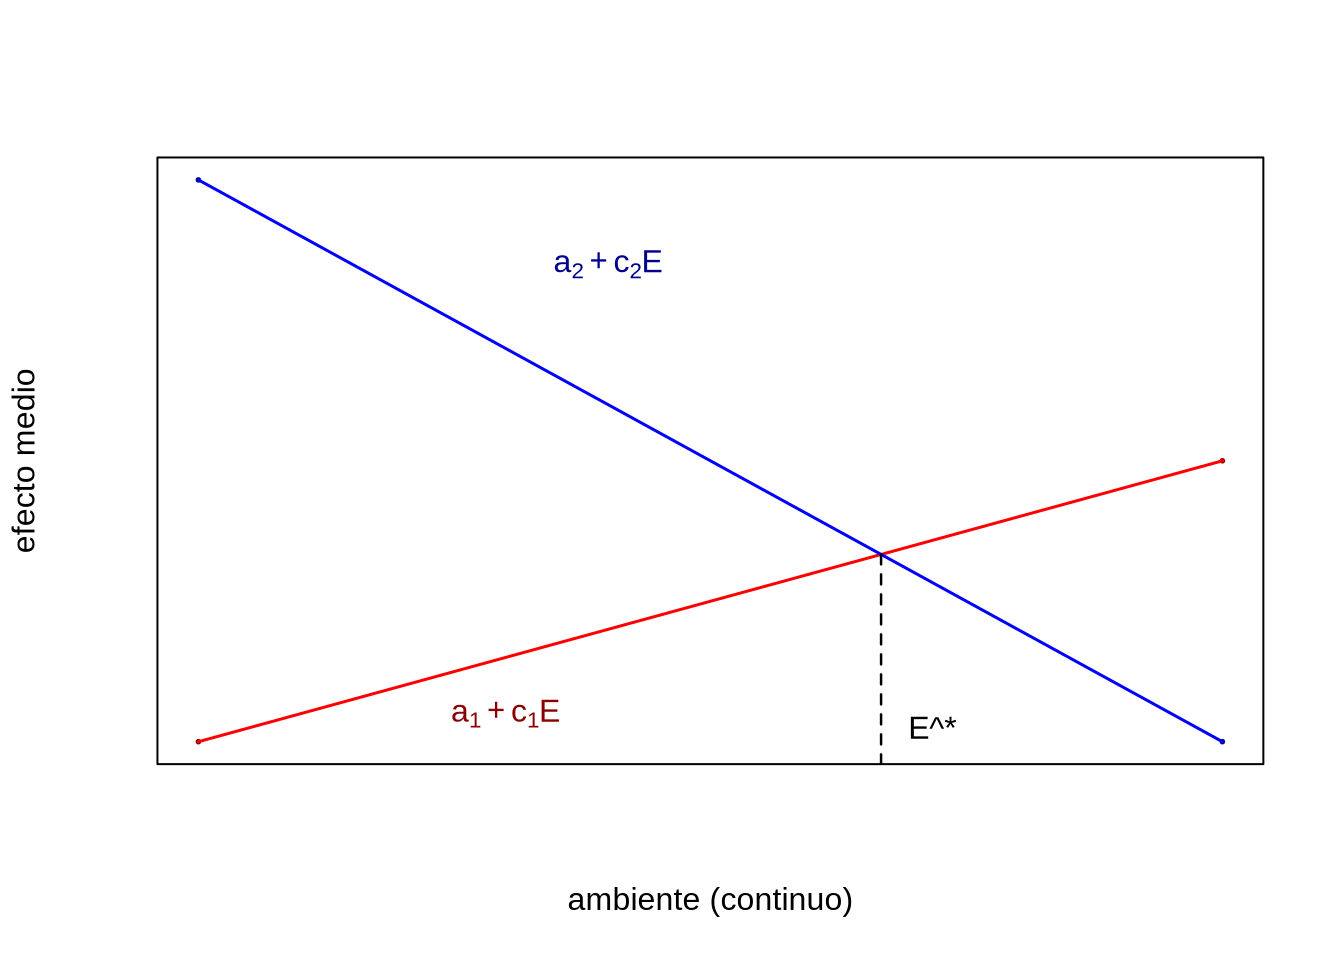 Normas de reacción lineales para el efecto medio de un alelo. El punto \(E^{\star}\) representa el valor del macroambiente donde se produce intersección de las dos funciones lineales (es decir, los efectos medios son iguales y el efecto de sustitución igual a cero).